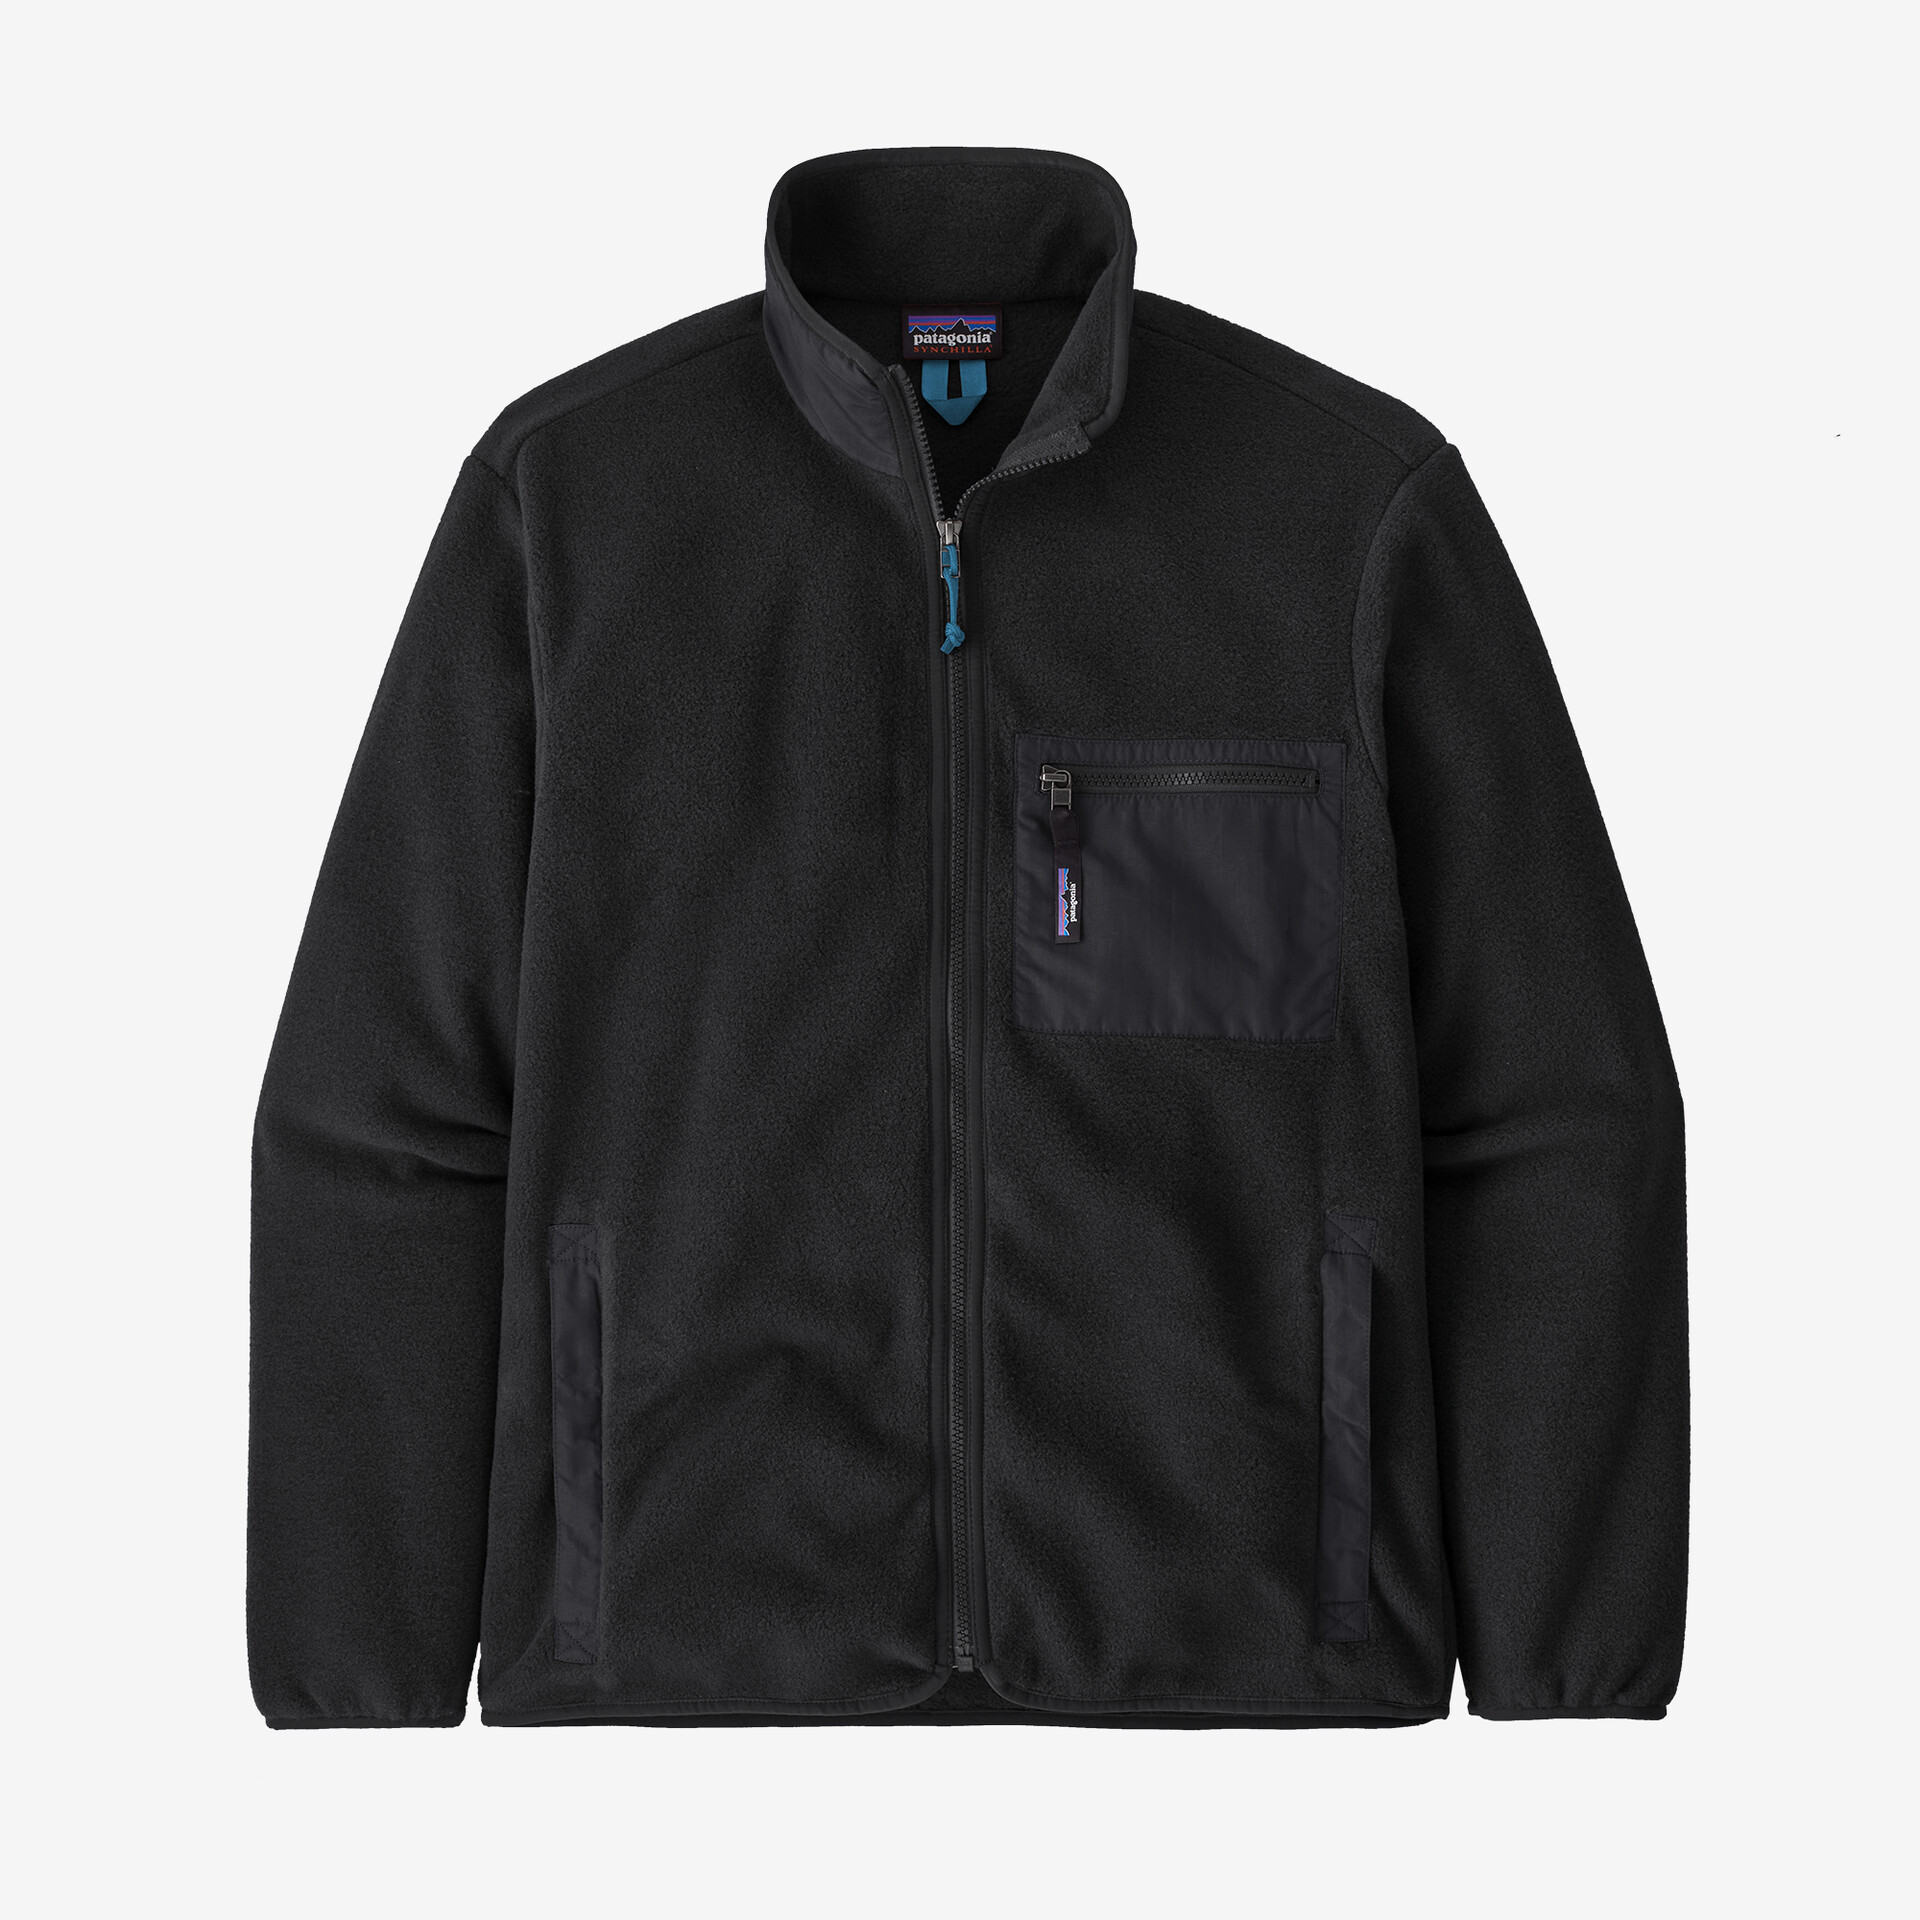 Мужская флисовая куртка Synchilla Patagonia, черный мужская флисовая куртка synchilla patagonia цвет obsidian plum